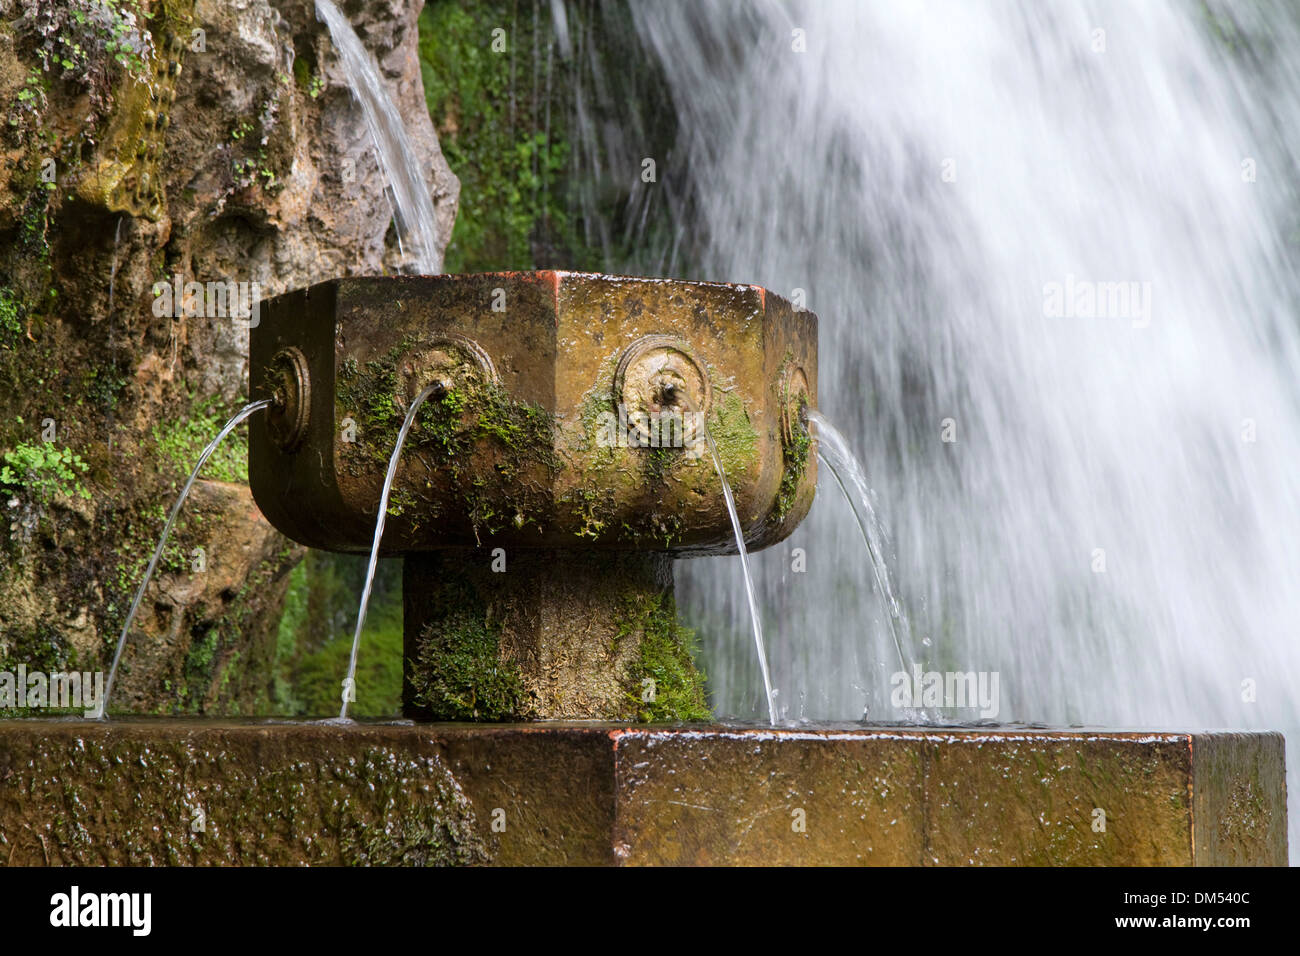 Fontaine à l'eau de source en Cangas de Onís situé dans les Asturies, dans le nord de l'Espagne. Banque D'Images